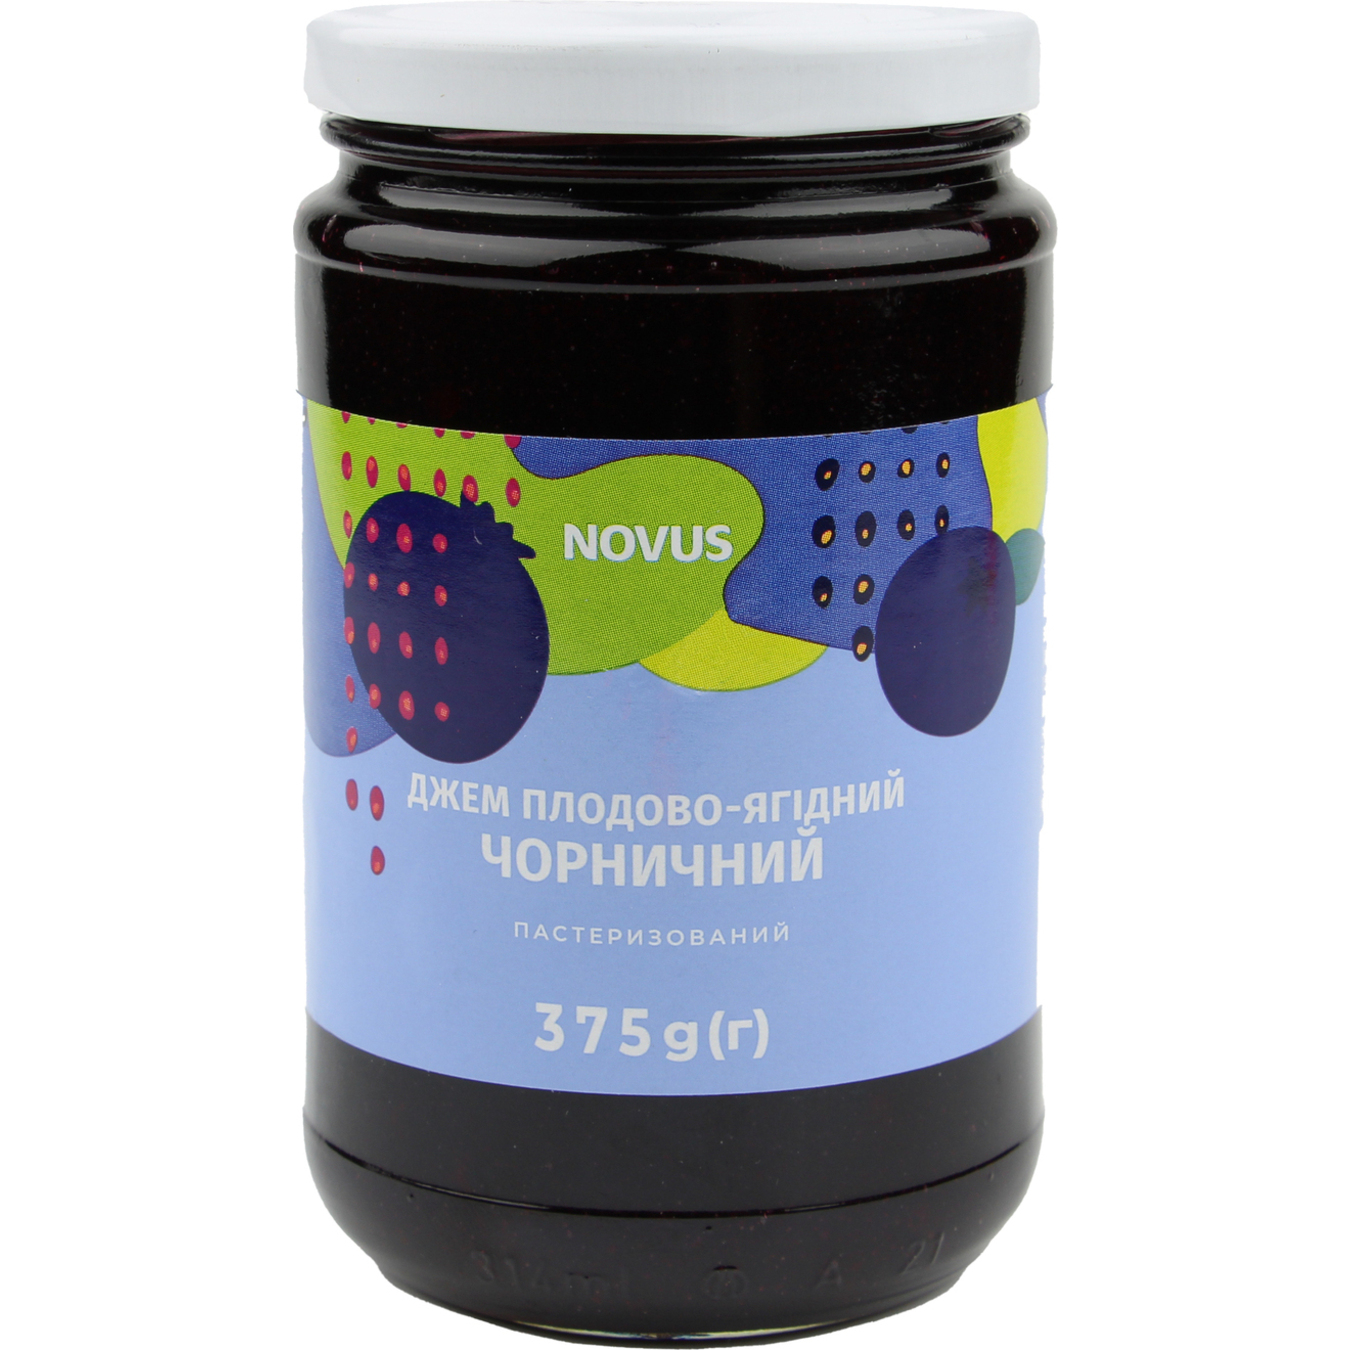 Novus Blueberry Jam 375g